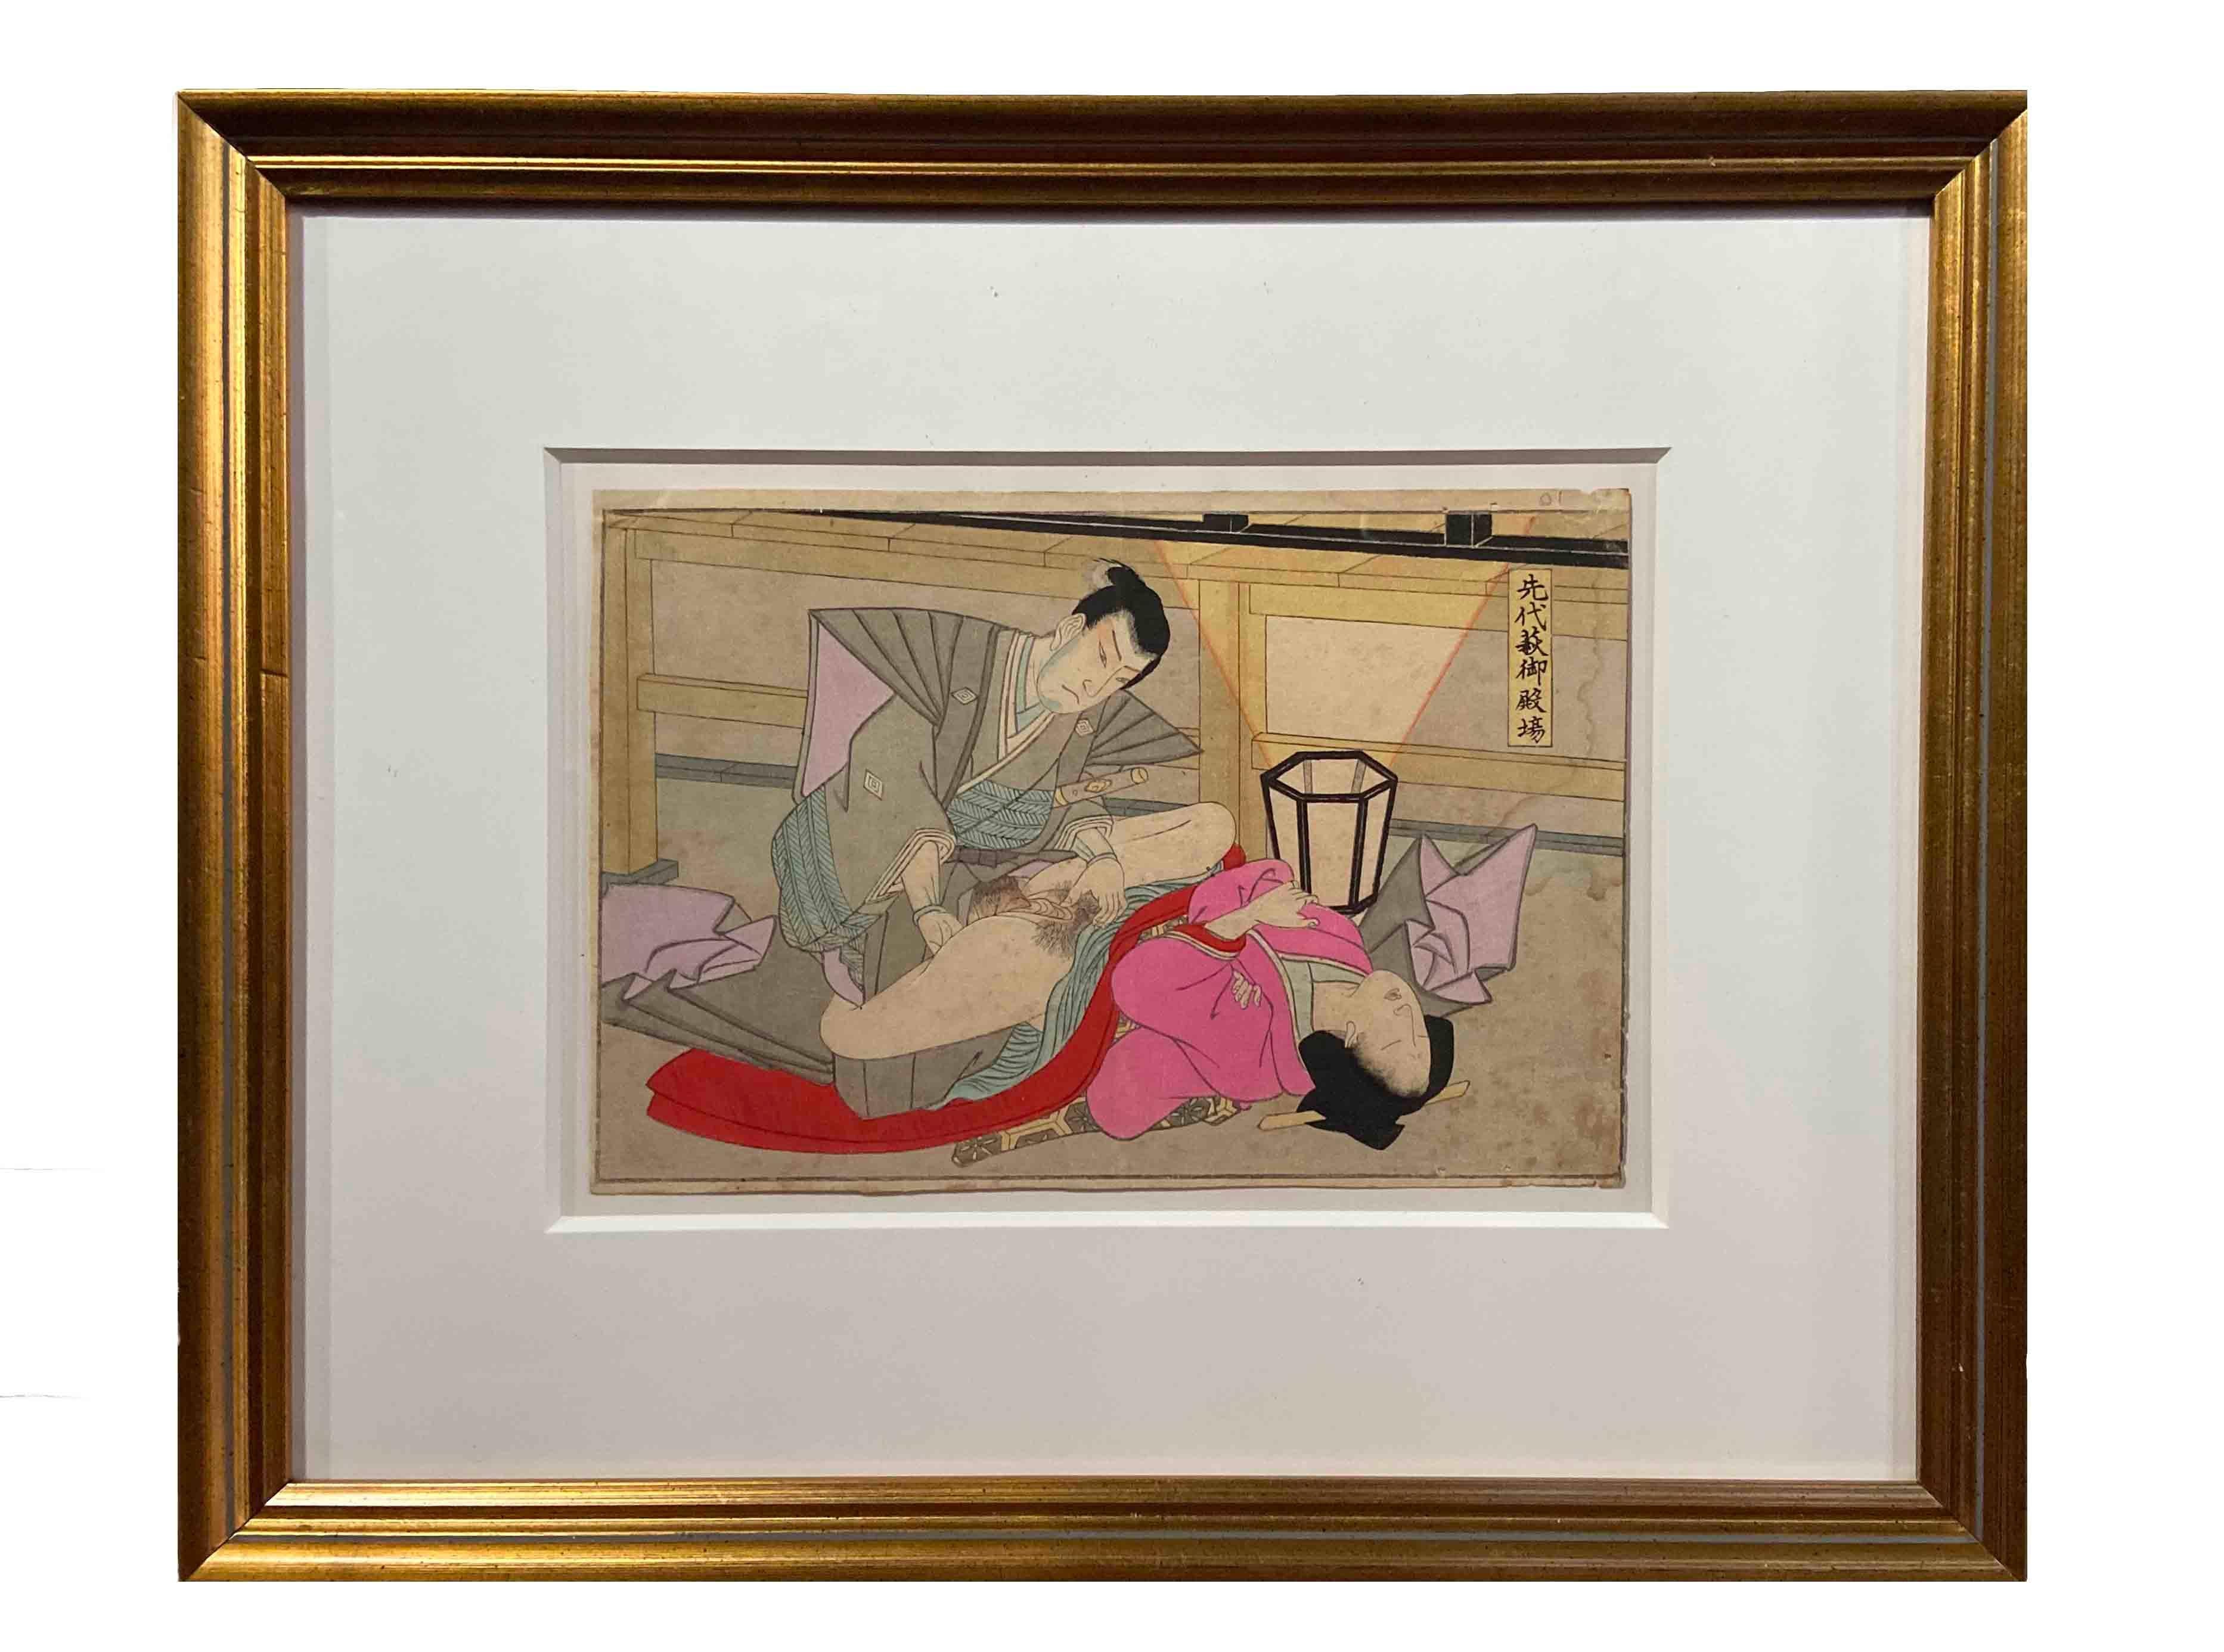 Ein antiker japanischer Shunga-Holzschnitt in vergoldetem Rahmen, der einen Mann und eine Frau beim Liebesspiel zeigt. Dieser in Japan entstandene Holzschnitt, der als Shunga bezeichnet wird und ein sich liebendes Paar zeigt, entstammt einer